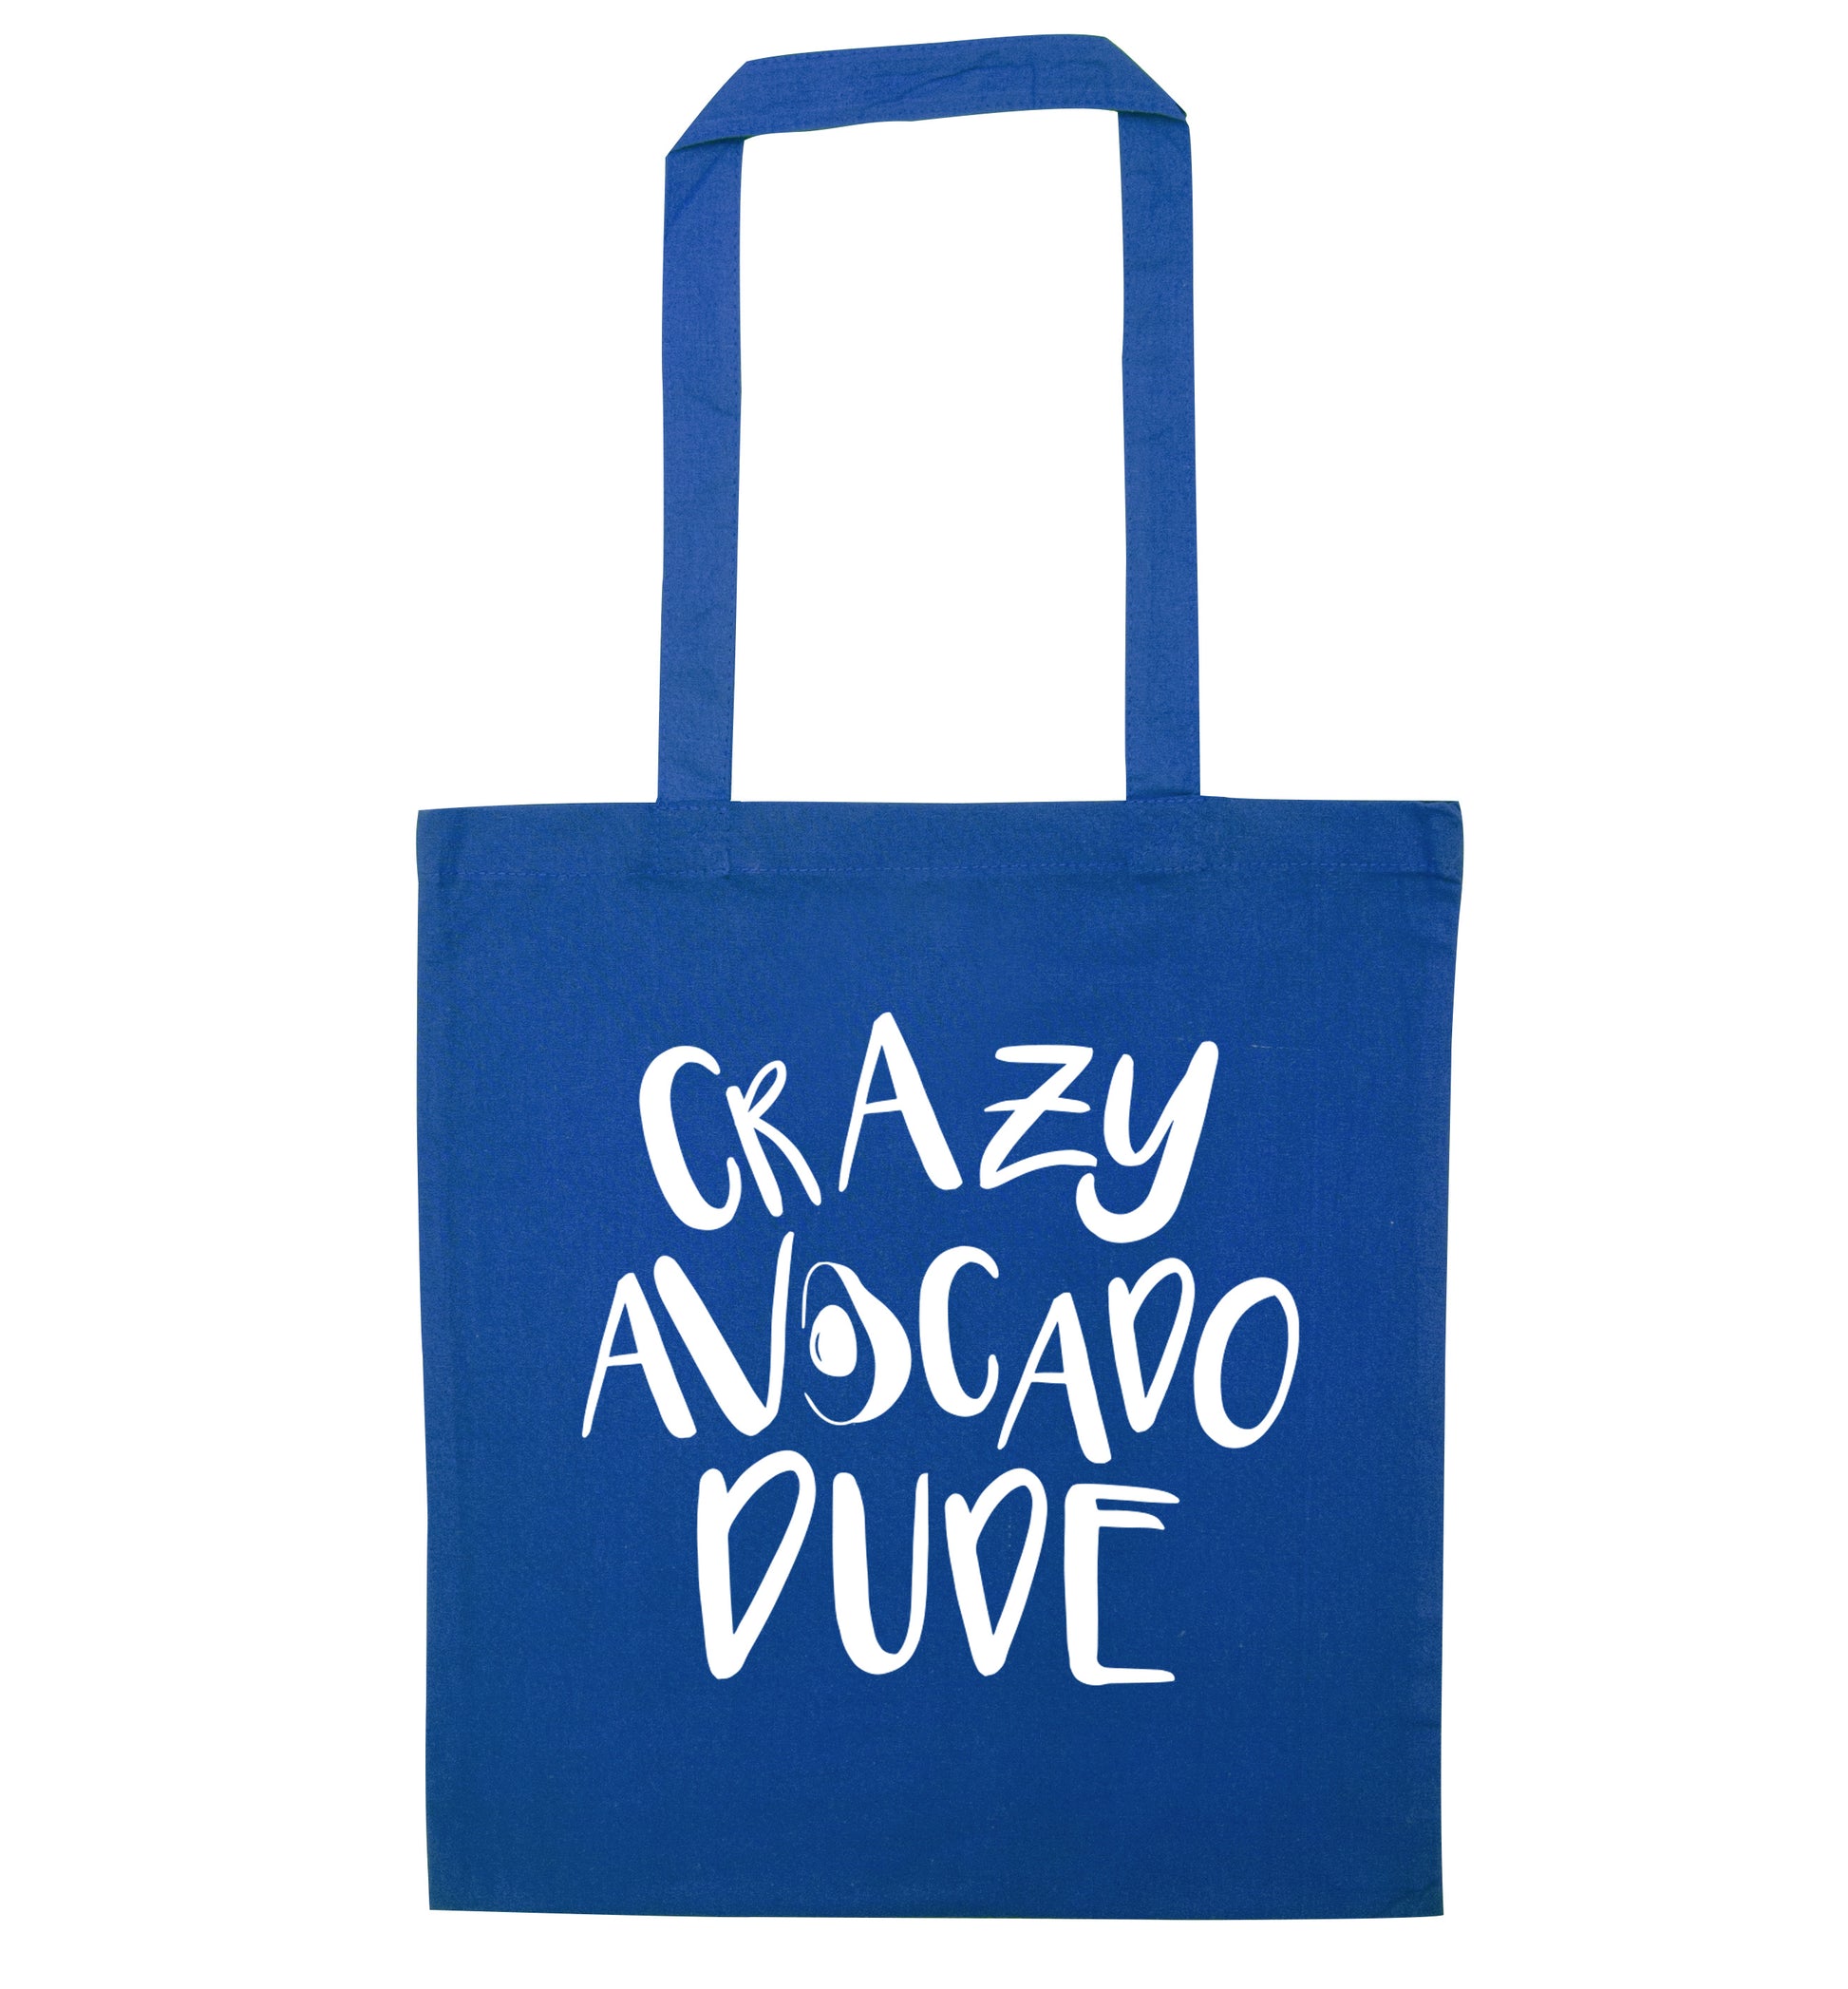 Crazy avocado dude blue tote bag